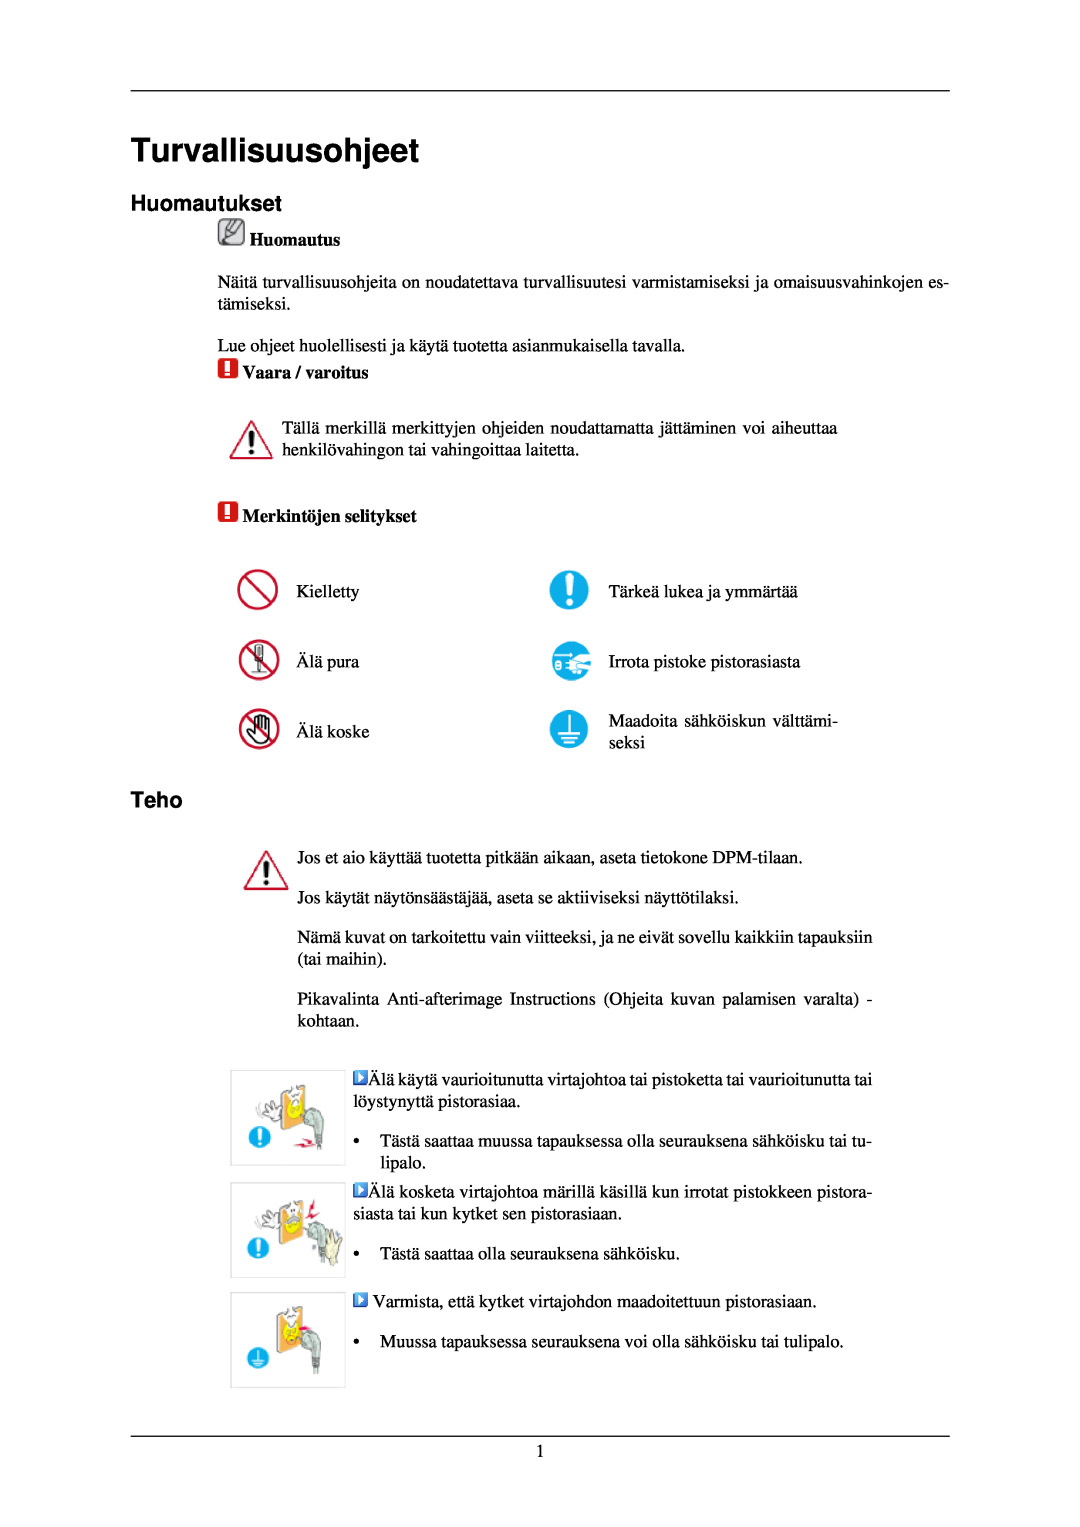 Samsung LH40TCQMBG/EN manual Turvallisuusohjeet, Huomautukset, Teho, Huomautus, Vaara / varoitus, Merkintöjen selitykset 